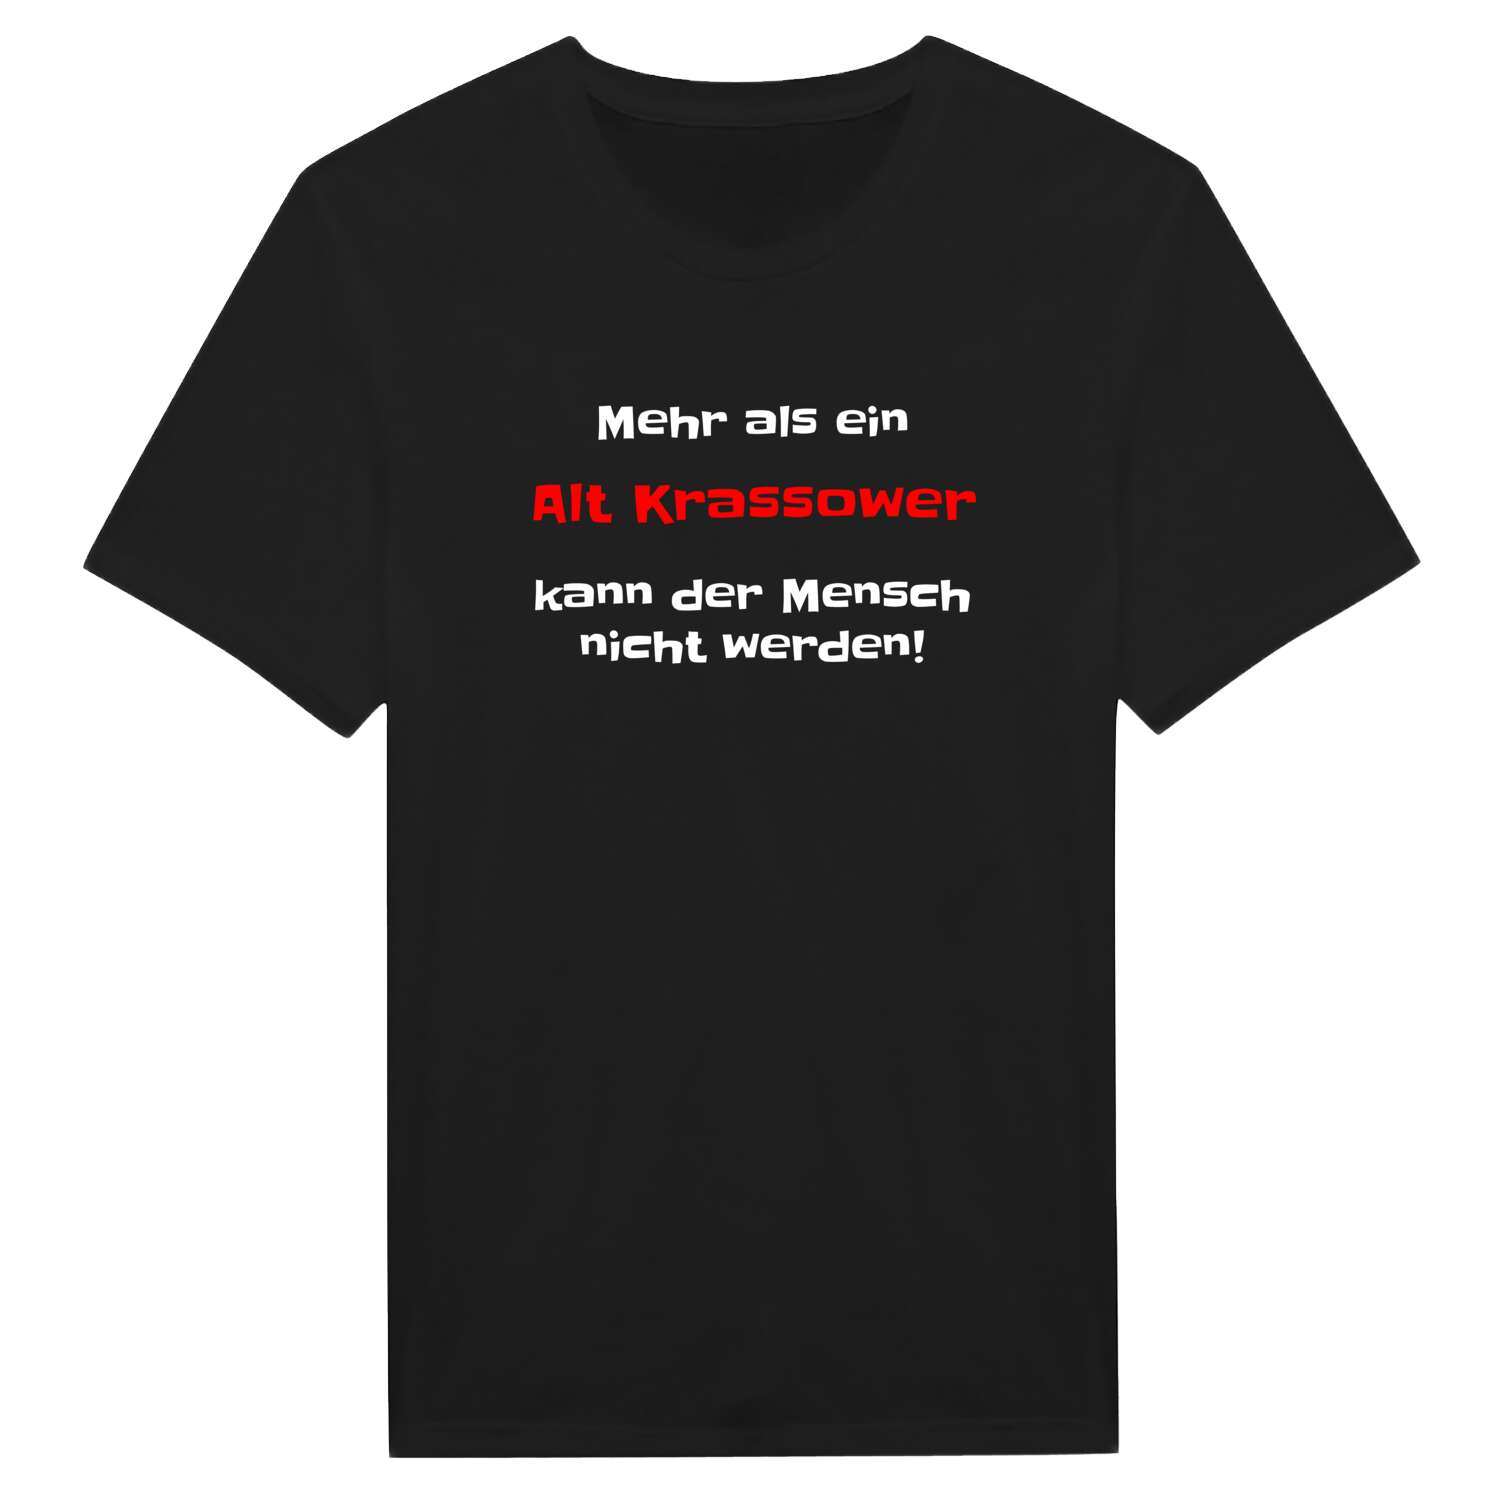 Alt Krassow T-Shirt »Mehr als ein«